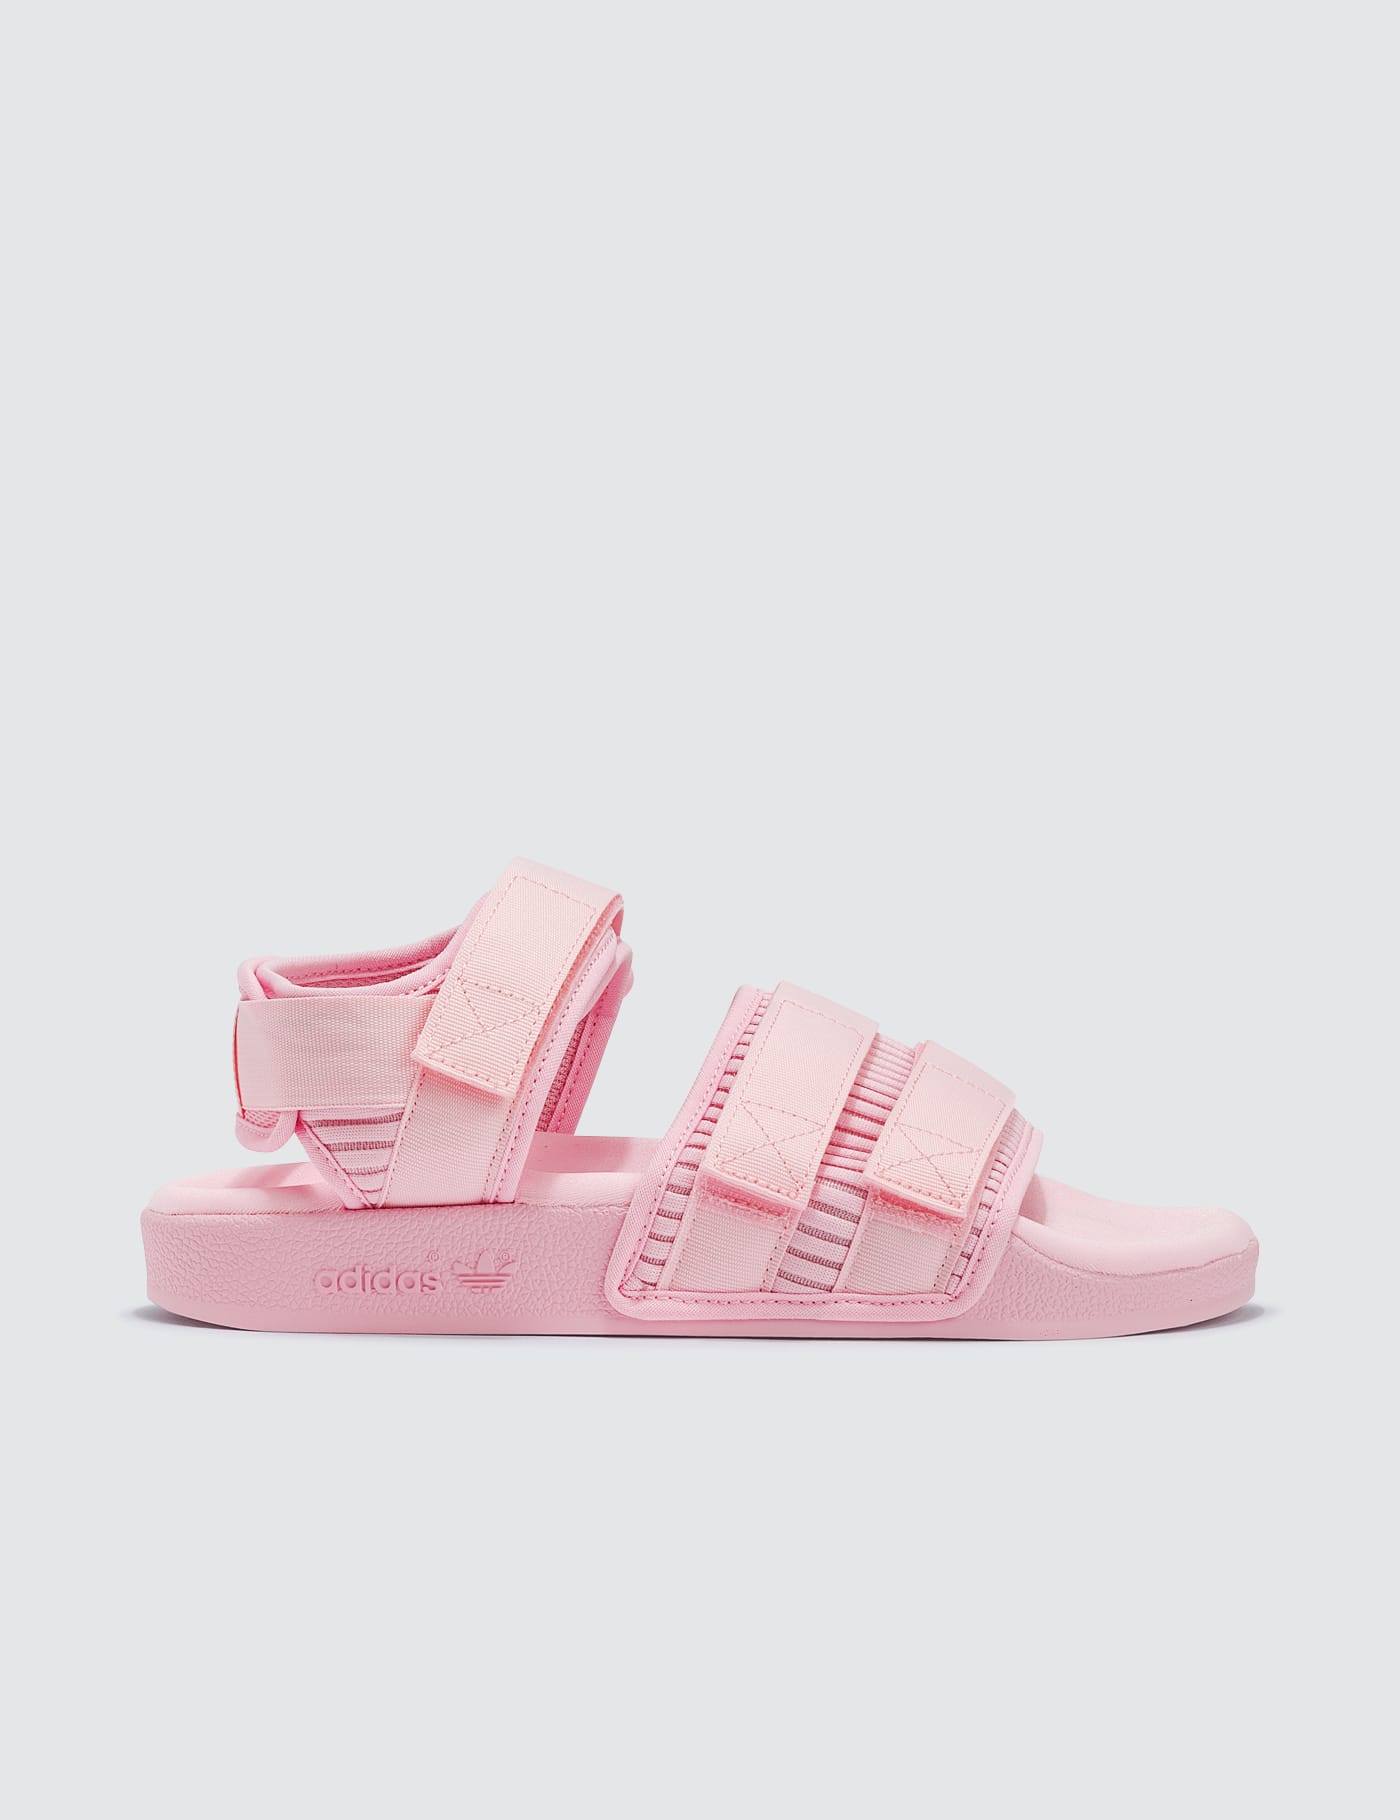 adidas originals adilette pink